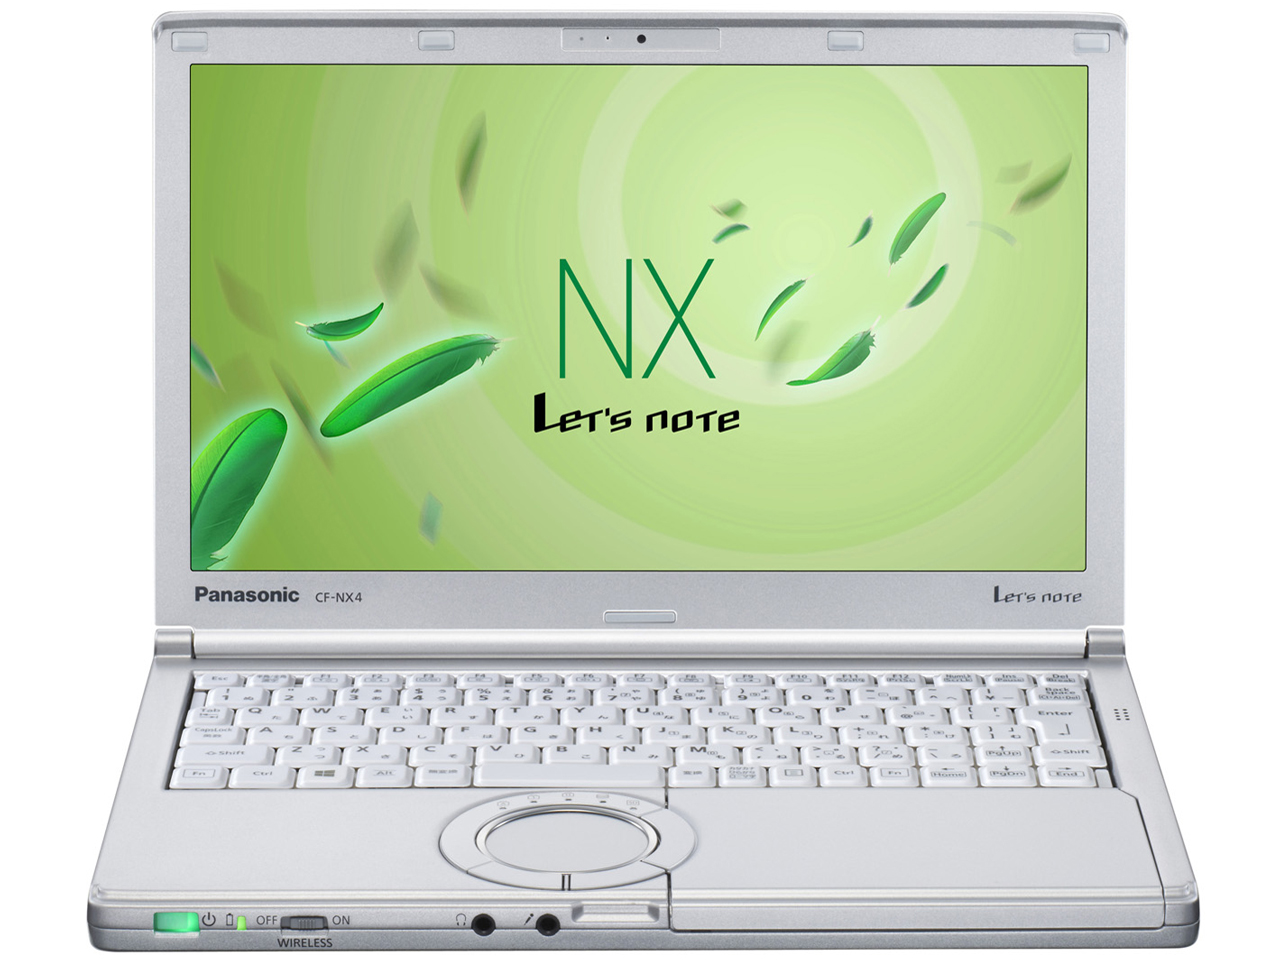 価格.com - Let's note NX4 CF-NX4EDHCS の製品画像